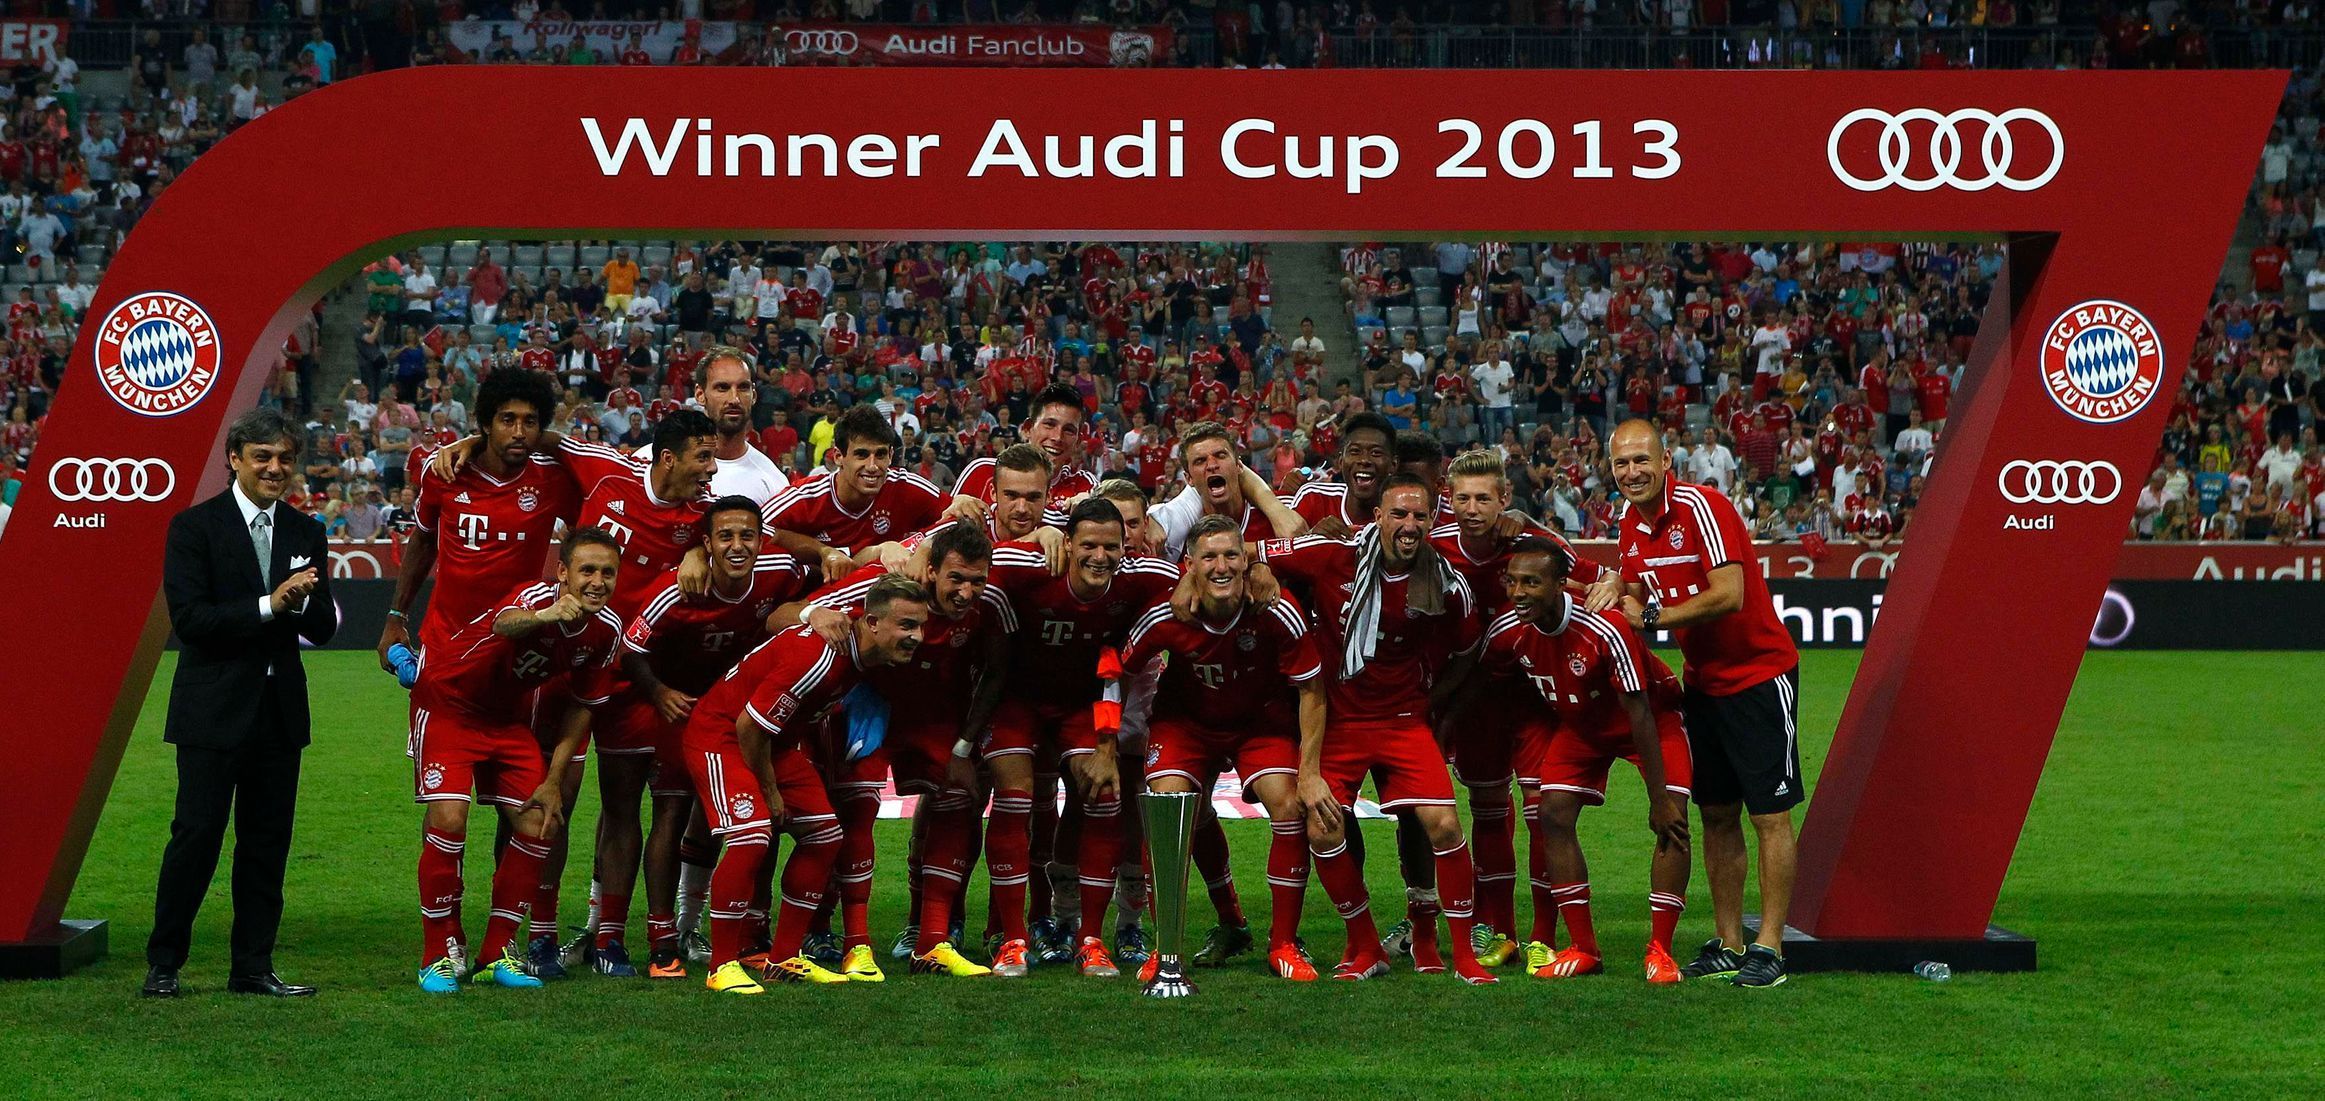 Bayern Mnichov slaví triumf v Audi Cupu 2013